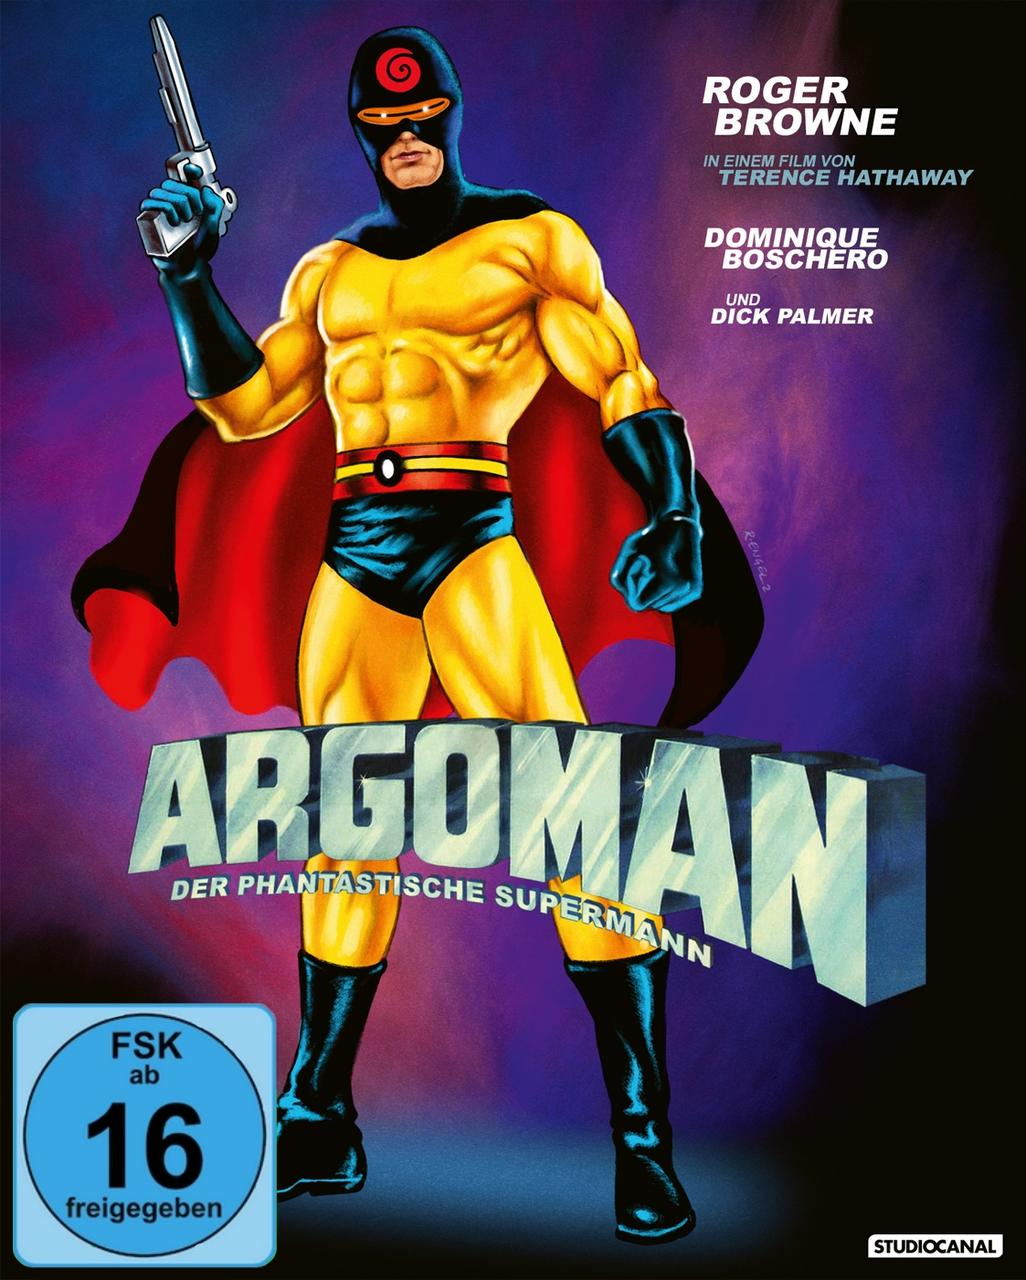 - Argoman Der Blu-ray Supermann phantastische